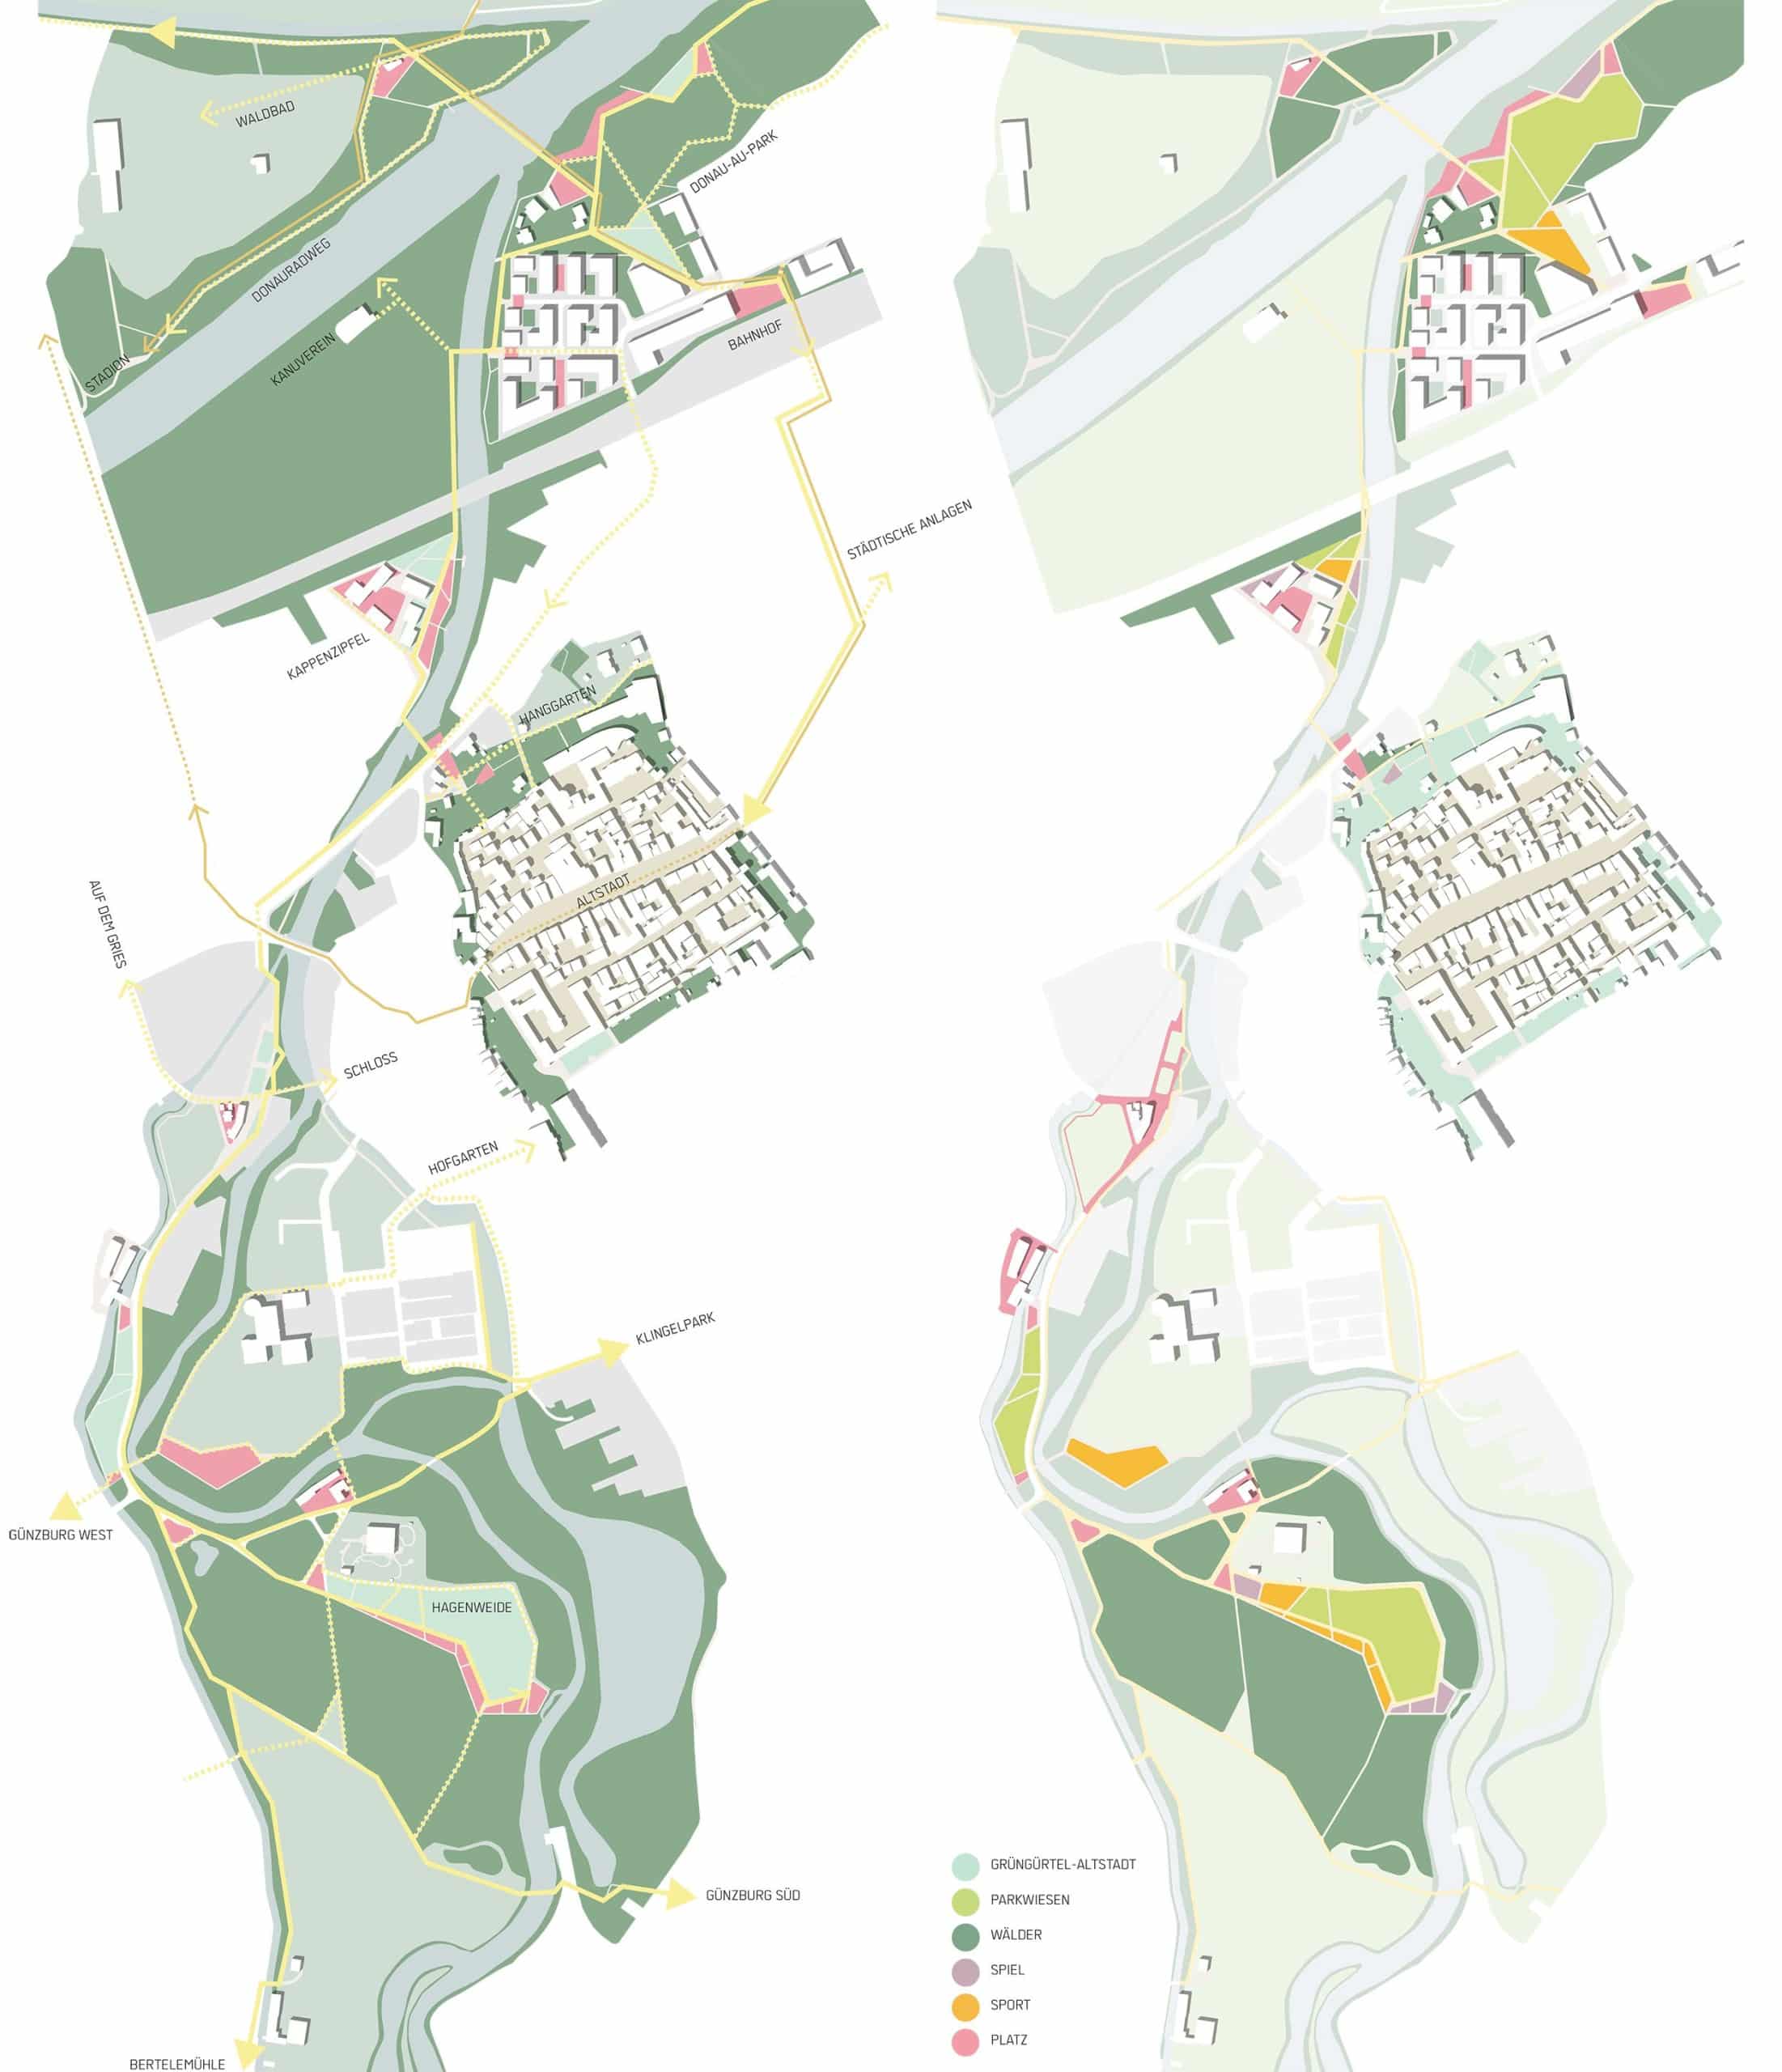 Ein Entwurf von A24 Landschaft und yellow z hat den Wettbewerb zur Landesgartenschau Günzburg gewonnen. © A24 Landschaft mit yellow z